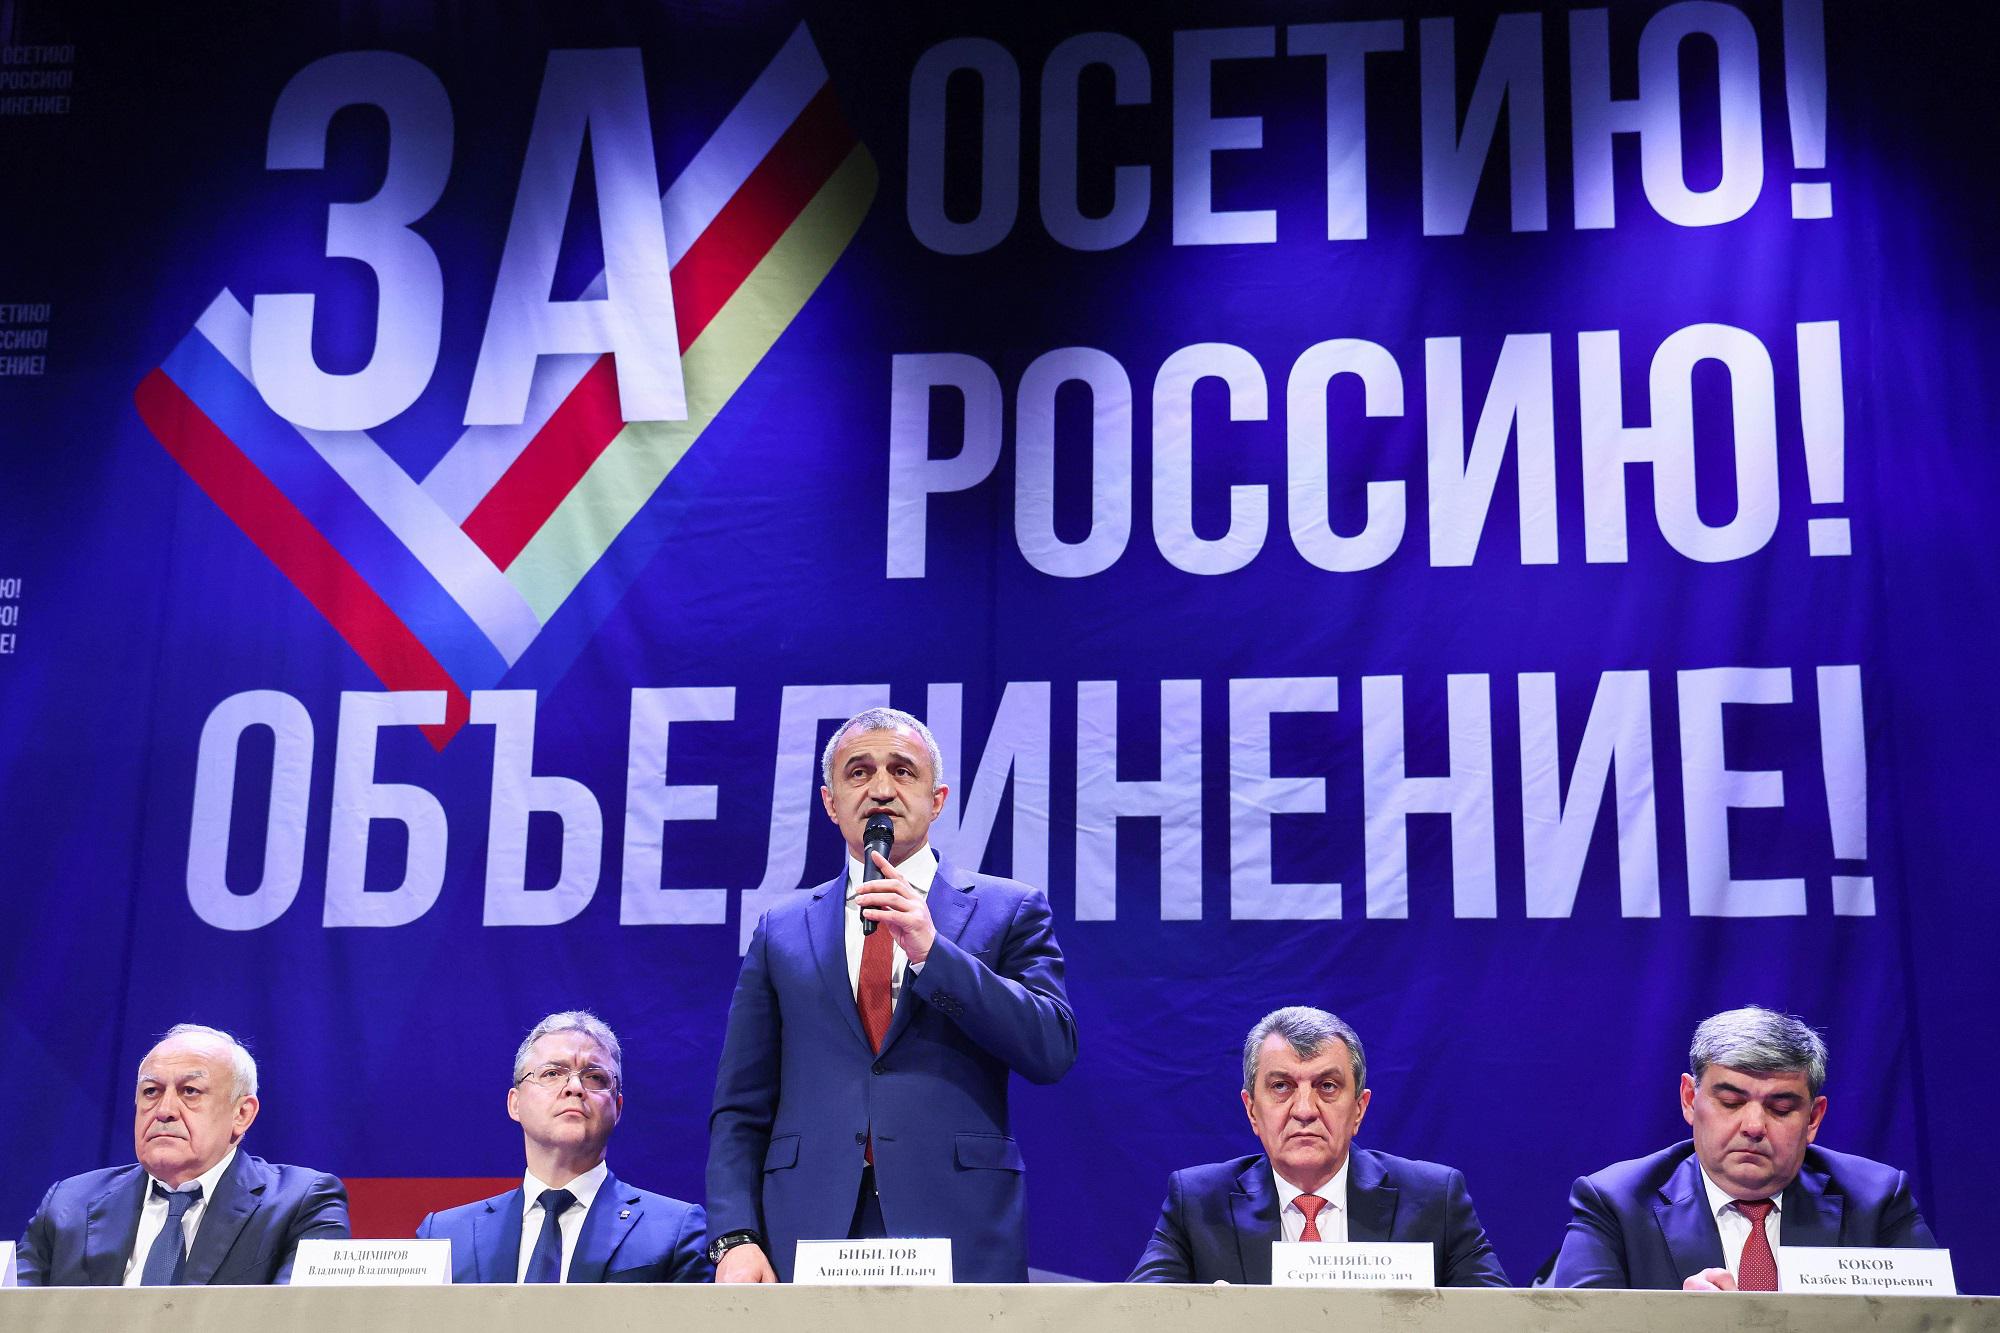 Ossezia del Sud, referendum per annessione a Russia il 17 luglio